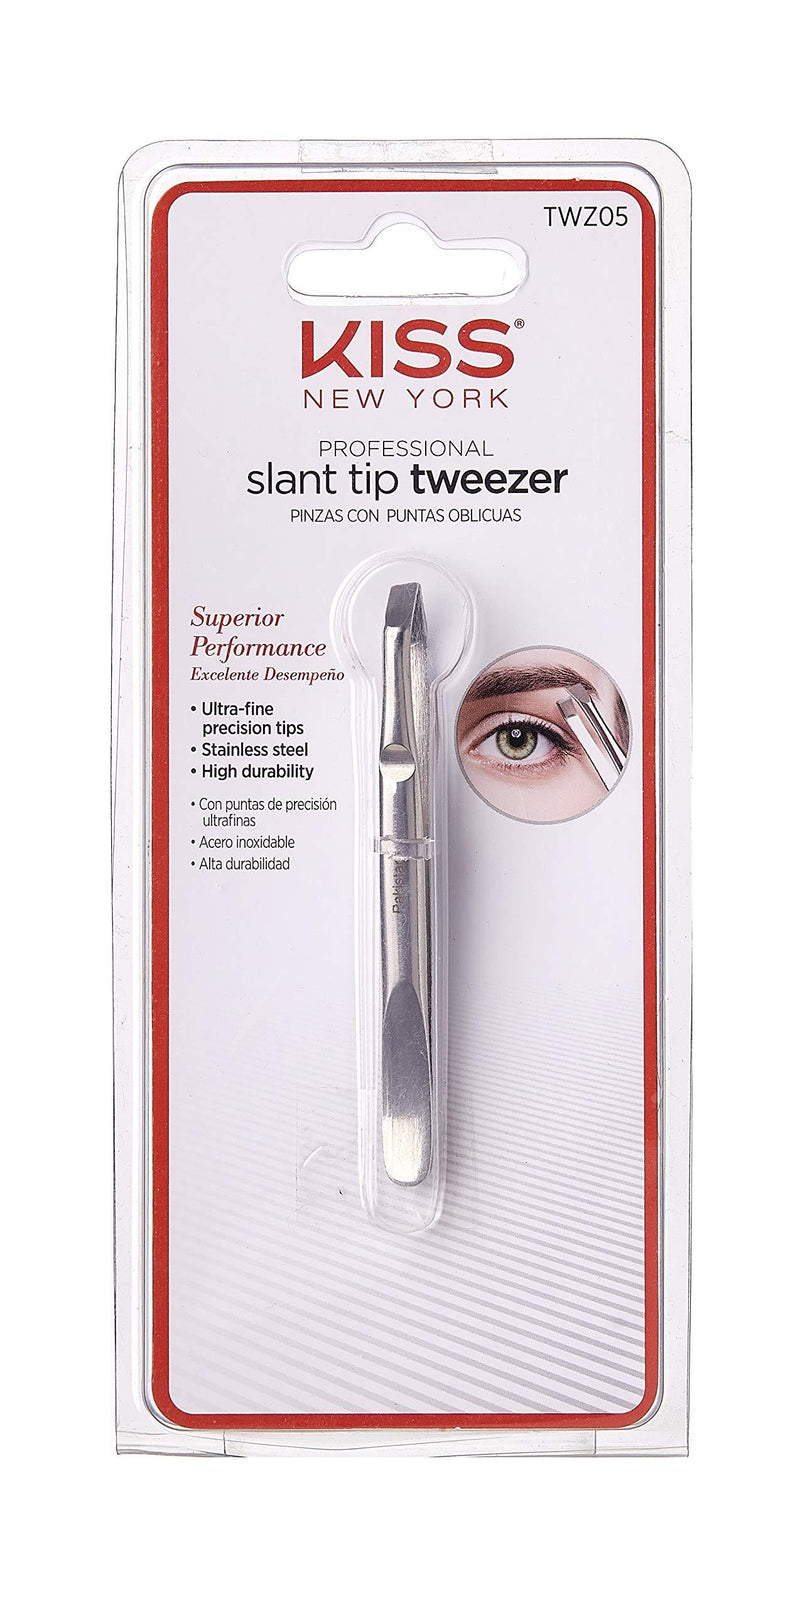 Kiss Slant Tip Tweezer, Ultra-fine precision tips, Stainless steel (TWZ05) TWZ05